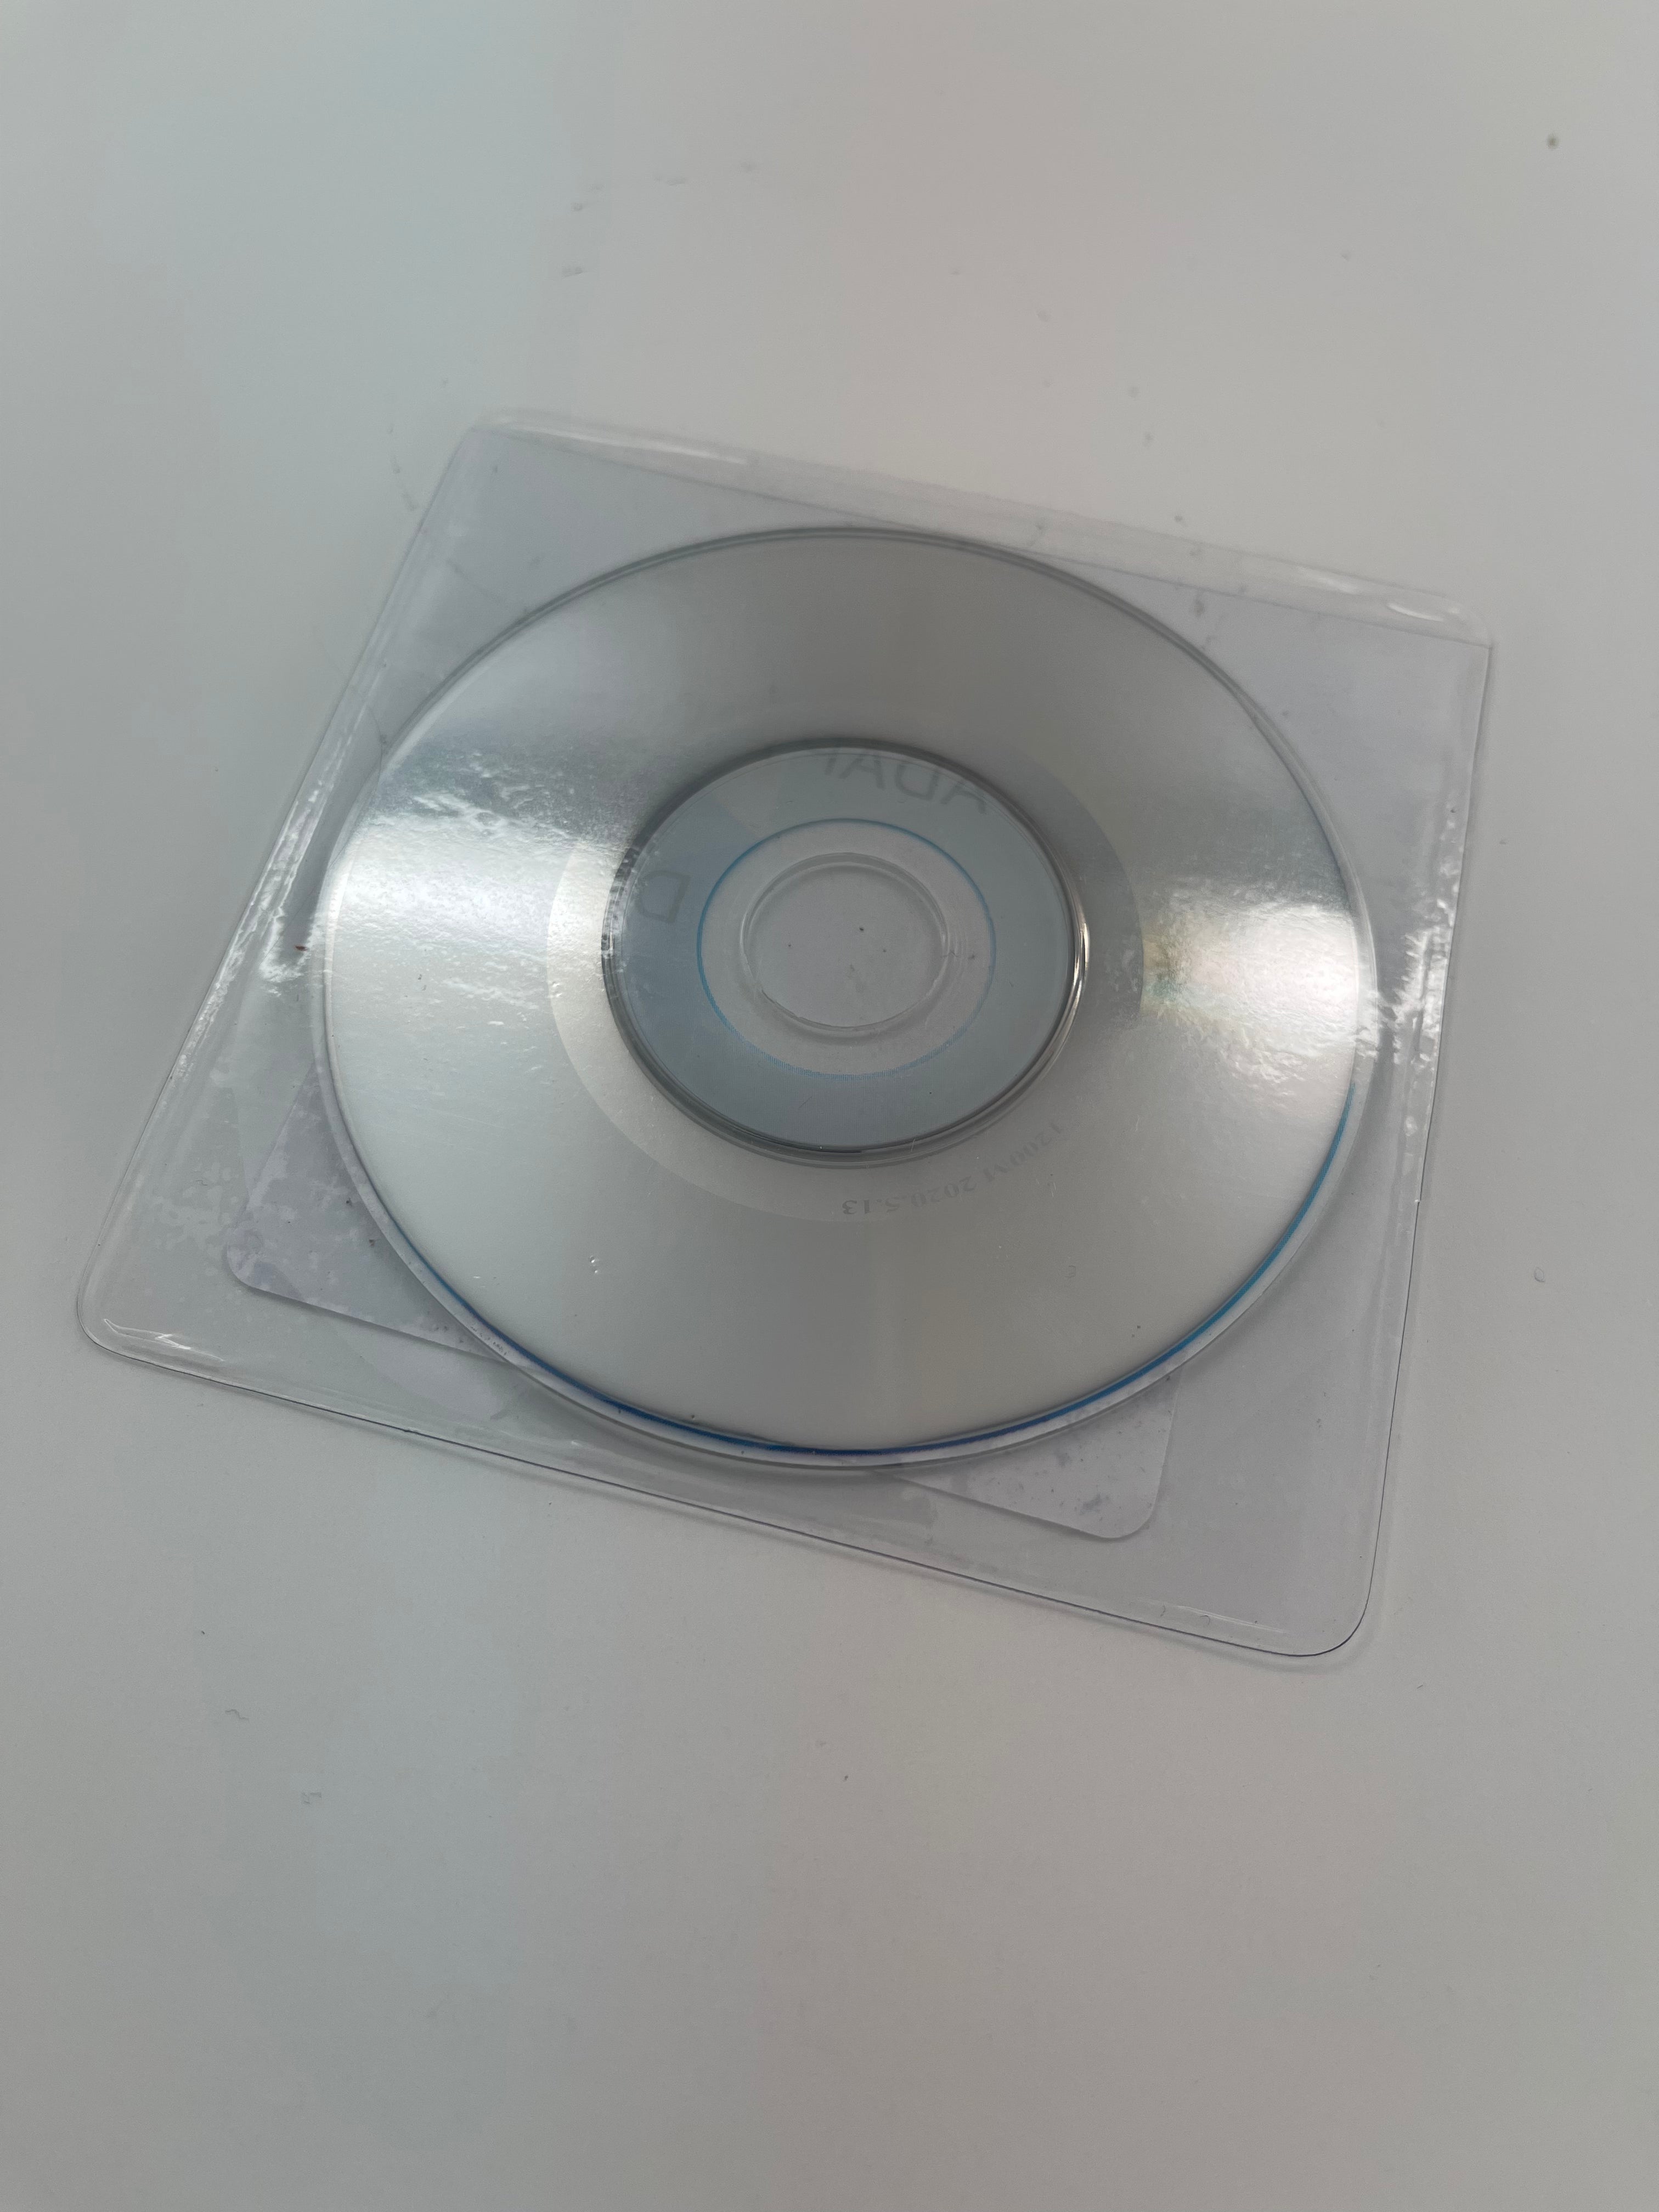 Vinyl Sleeves for 3 inch Mini CD/DVD